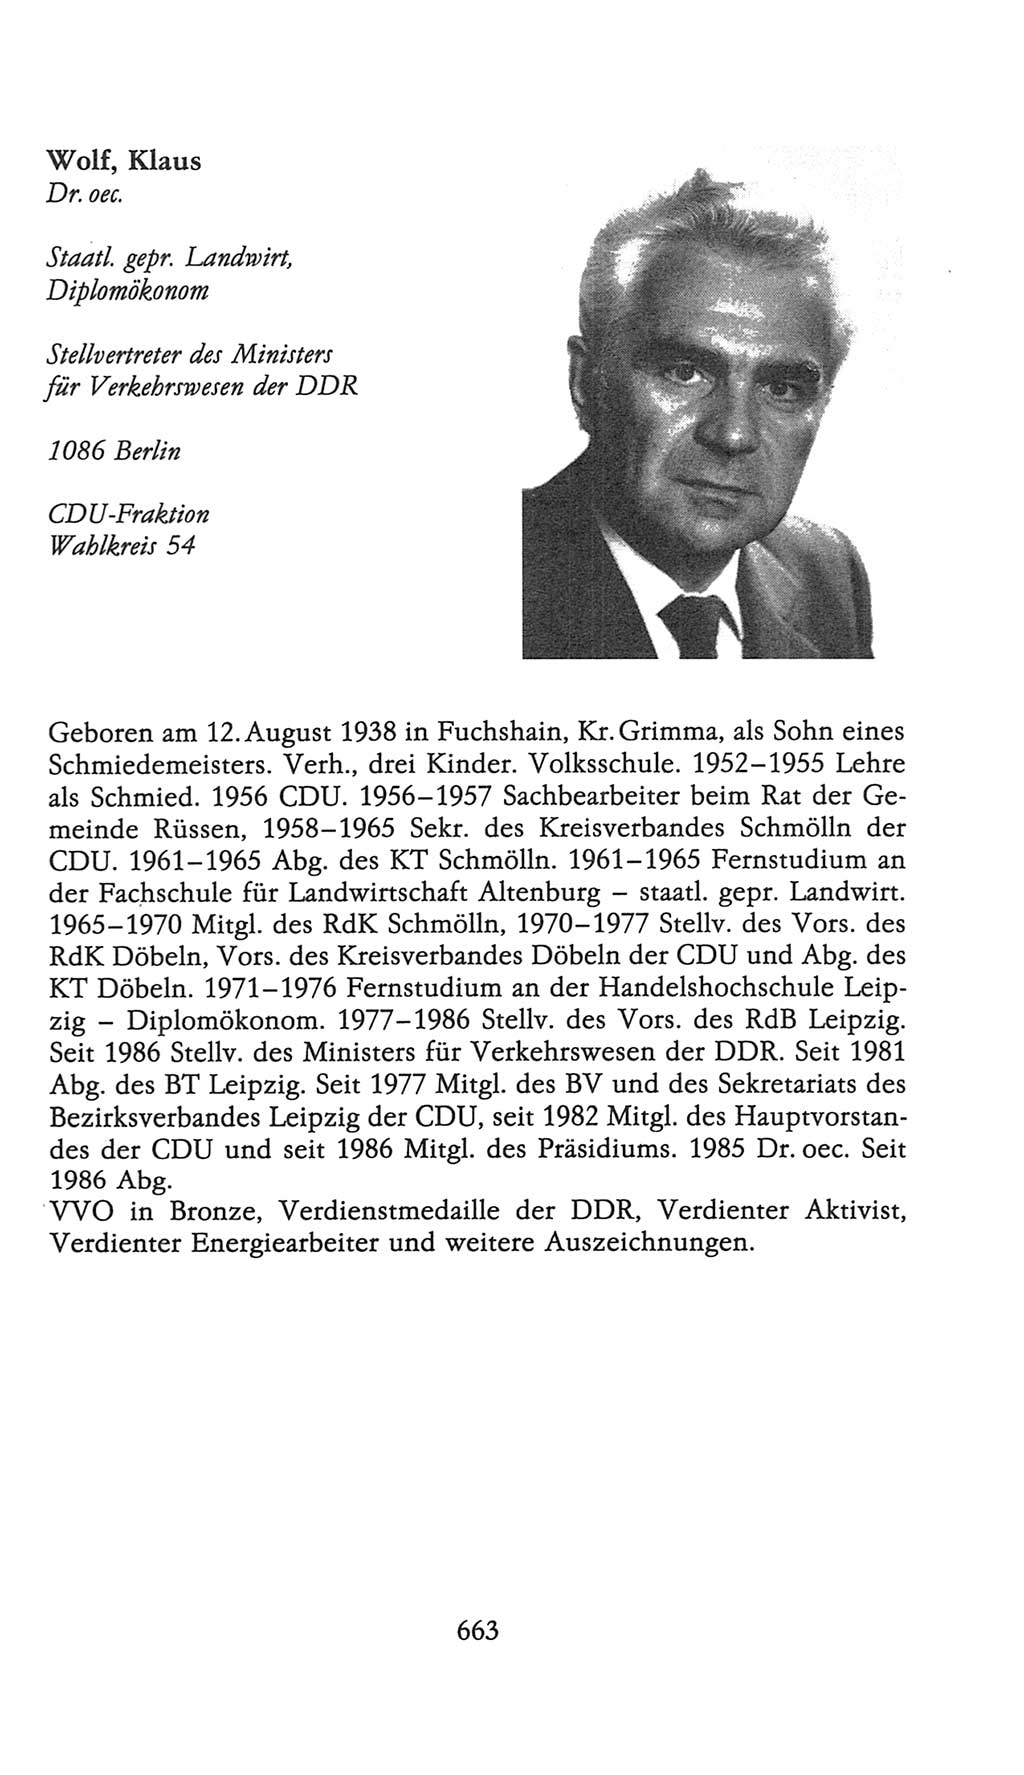 Volkskammer (VK) der Deutschen Demokratischen Republik (DDR), 9. Wahlperiode 1986-1990, Seite 663 (VK. DDR 9. WP. 1986-1990, S. 663)